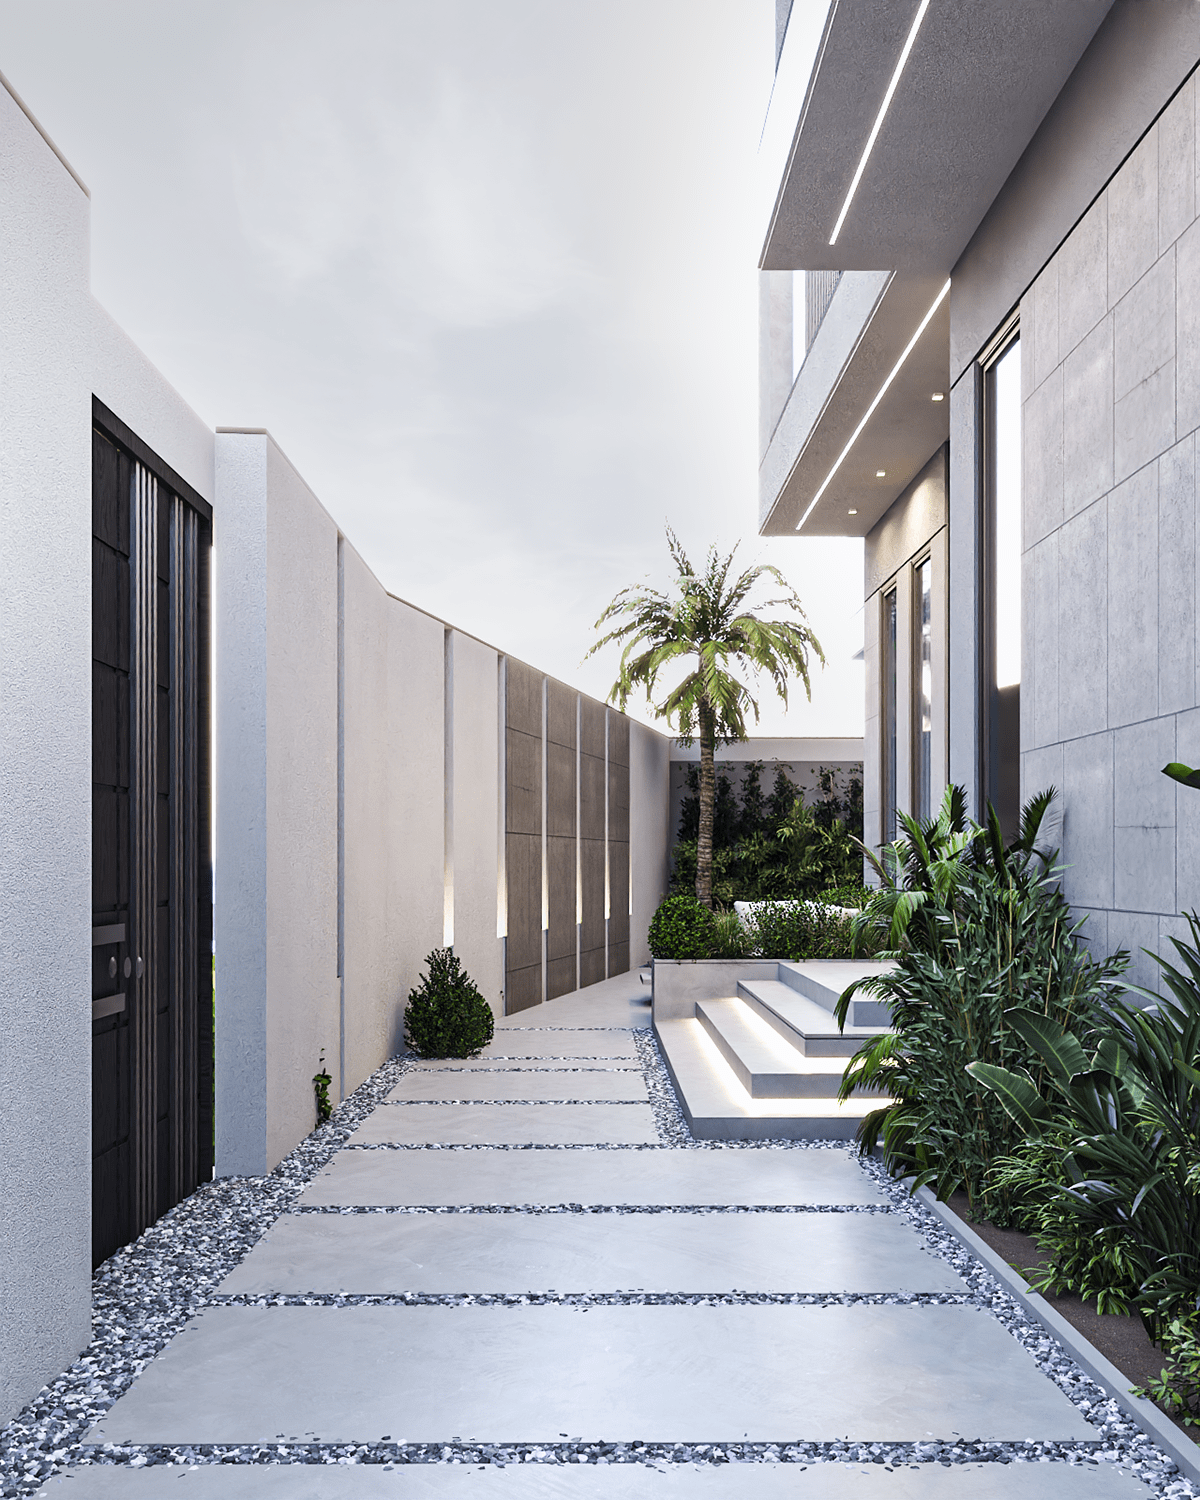 Villa villa design Facade design modern exterior Landscape architecture visualization Saudi Arabia